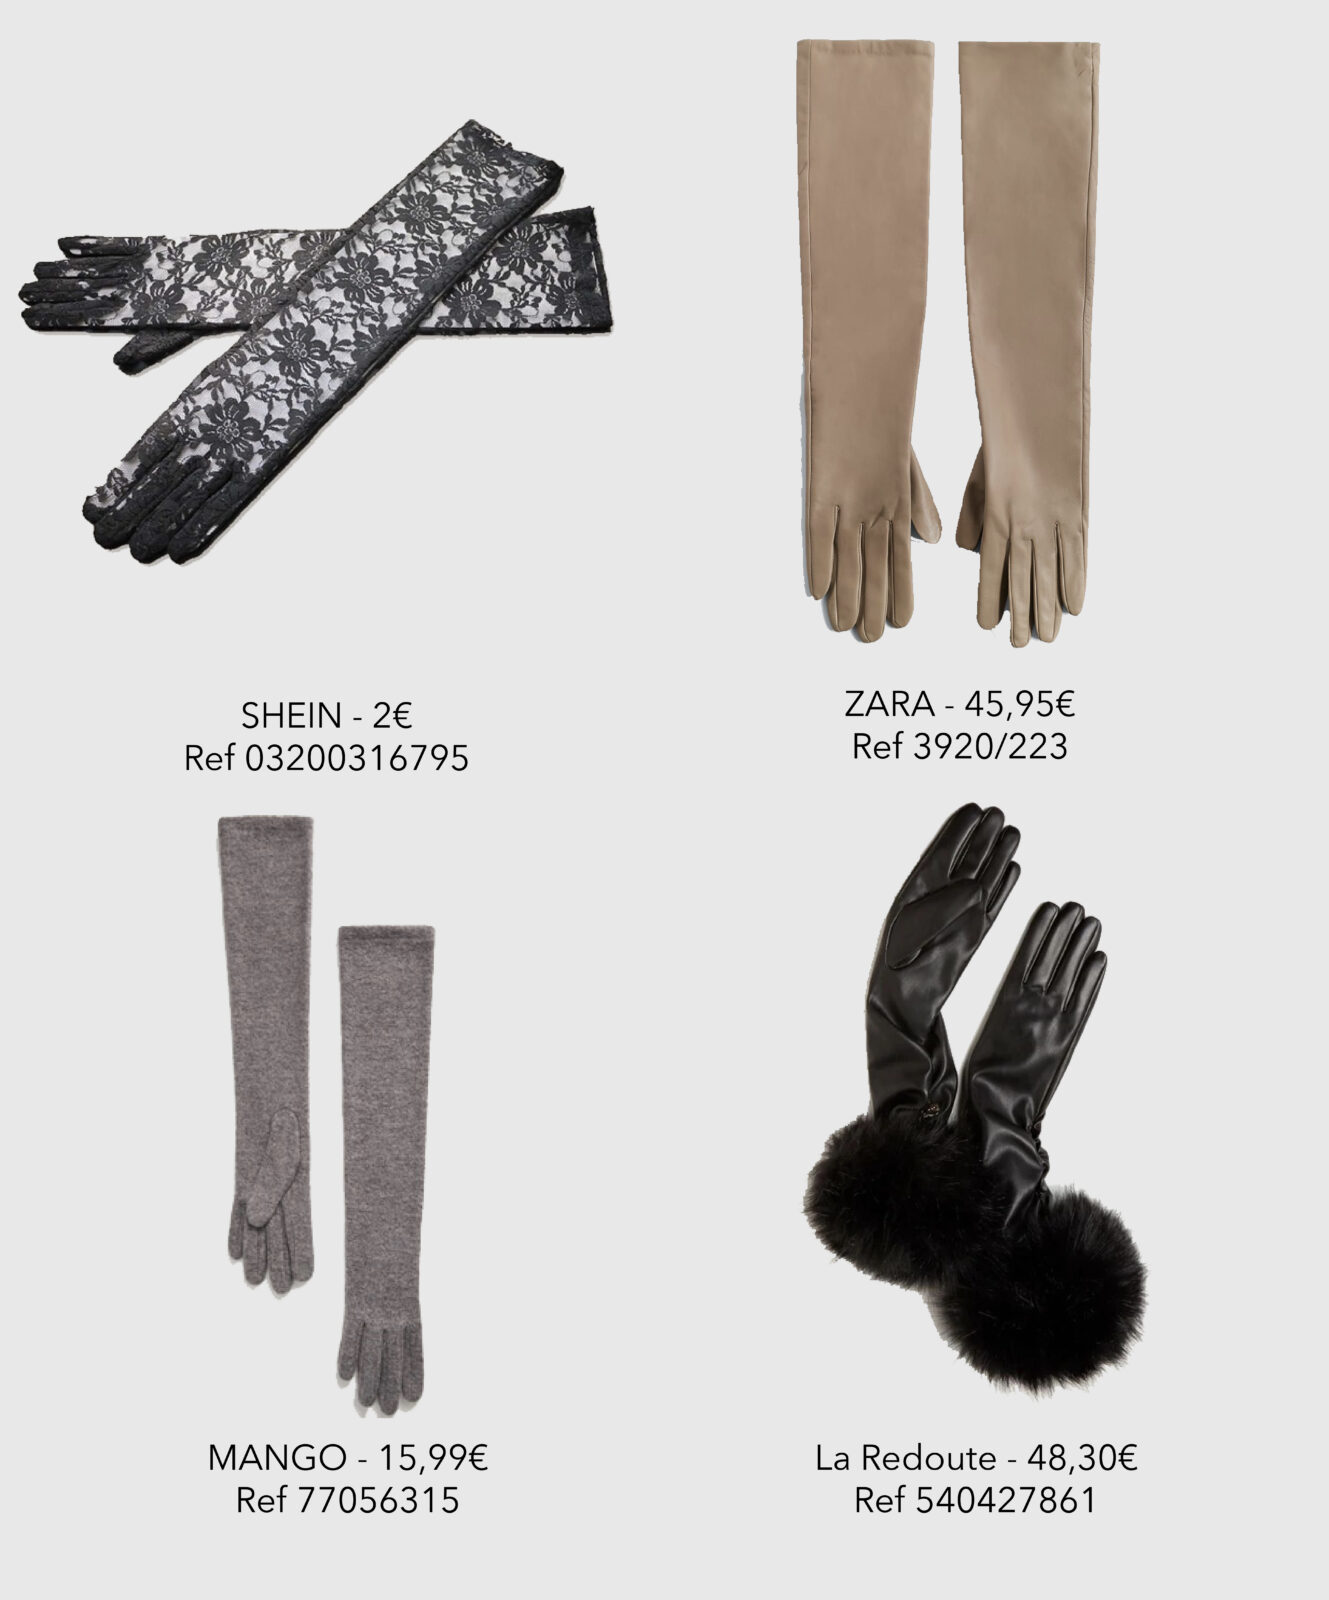 Les gants - Get the Look